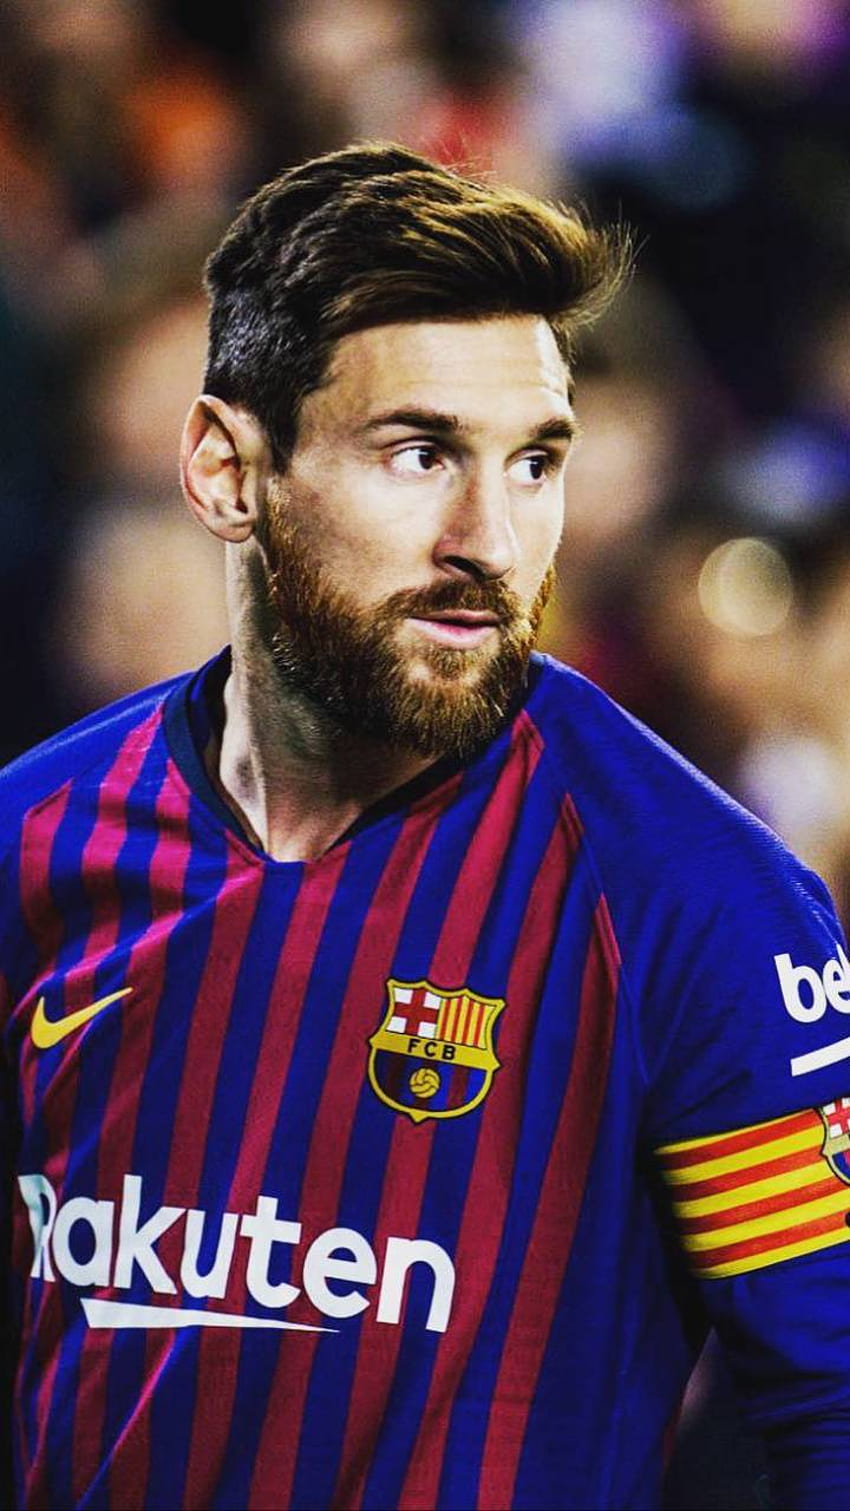 Messi Face: Khám phá nét mặt đầy quyến rũ và sự nghiêm túc của siêu sao bóng đá Lionel Messi qua những hình ảnh tuyệt đẹp này. Hãy ngắm nhìn ánh mắt sắc bén và nụ cười tinh nghịch của anh ta và cảm nhận sự phấn khích.